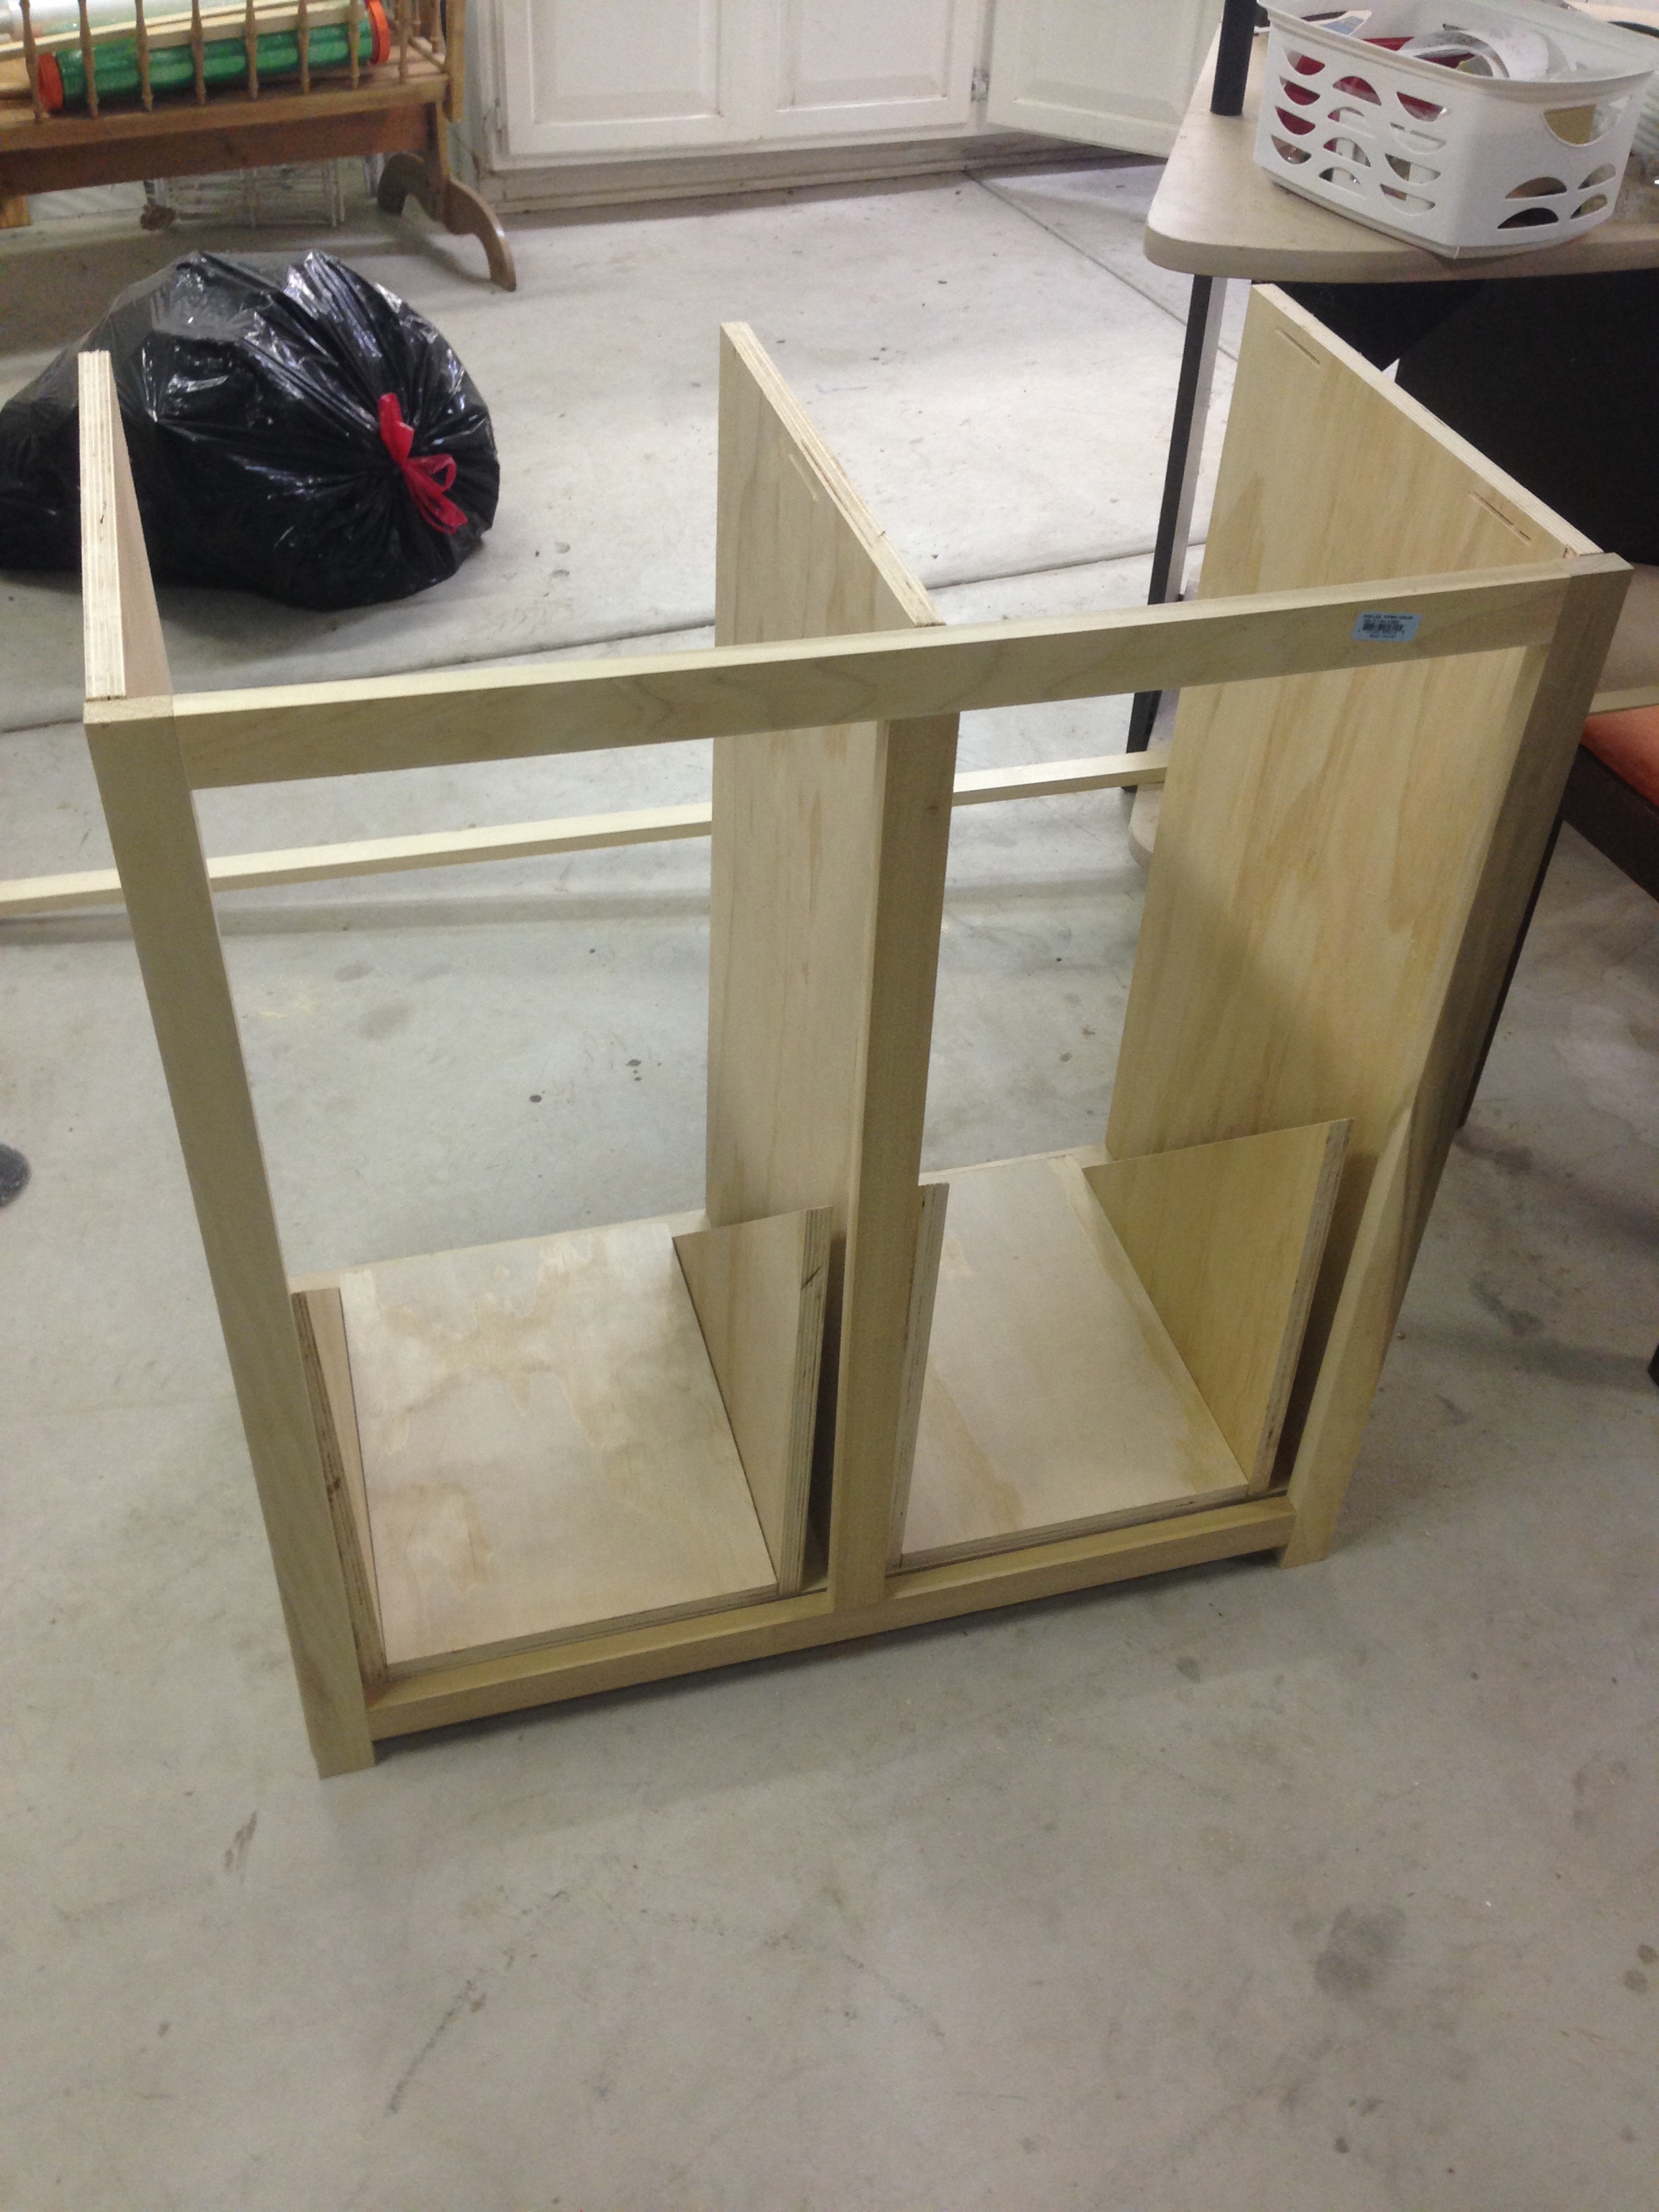 I Built A Tilt Out Trash Can Cabinet, Double Tilt Out Trash Bin Cabinet With Drawer Plans